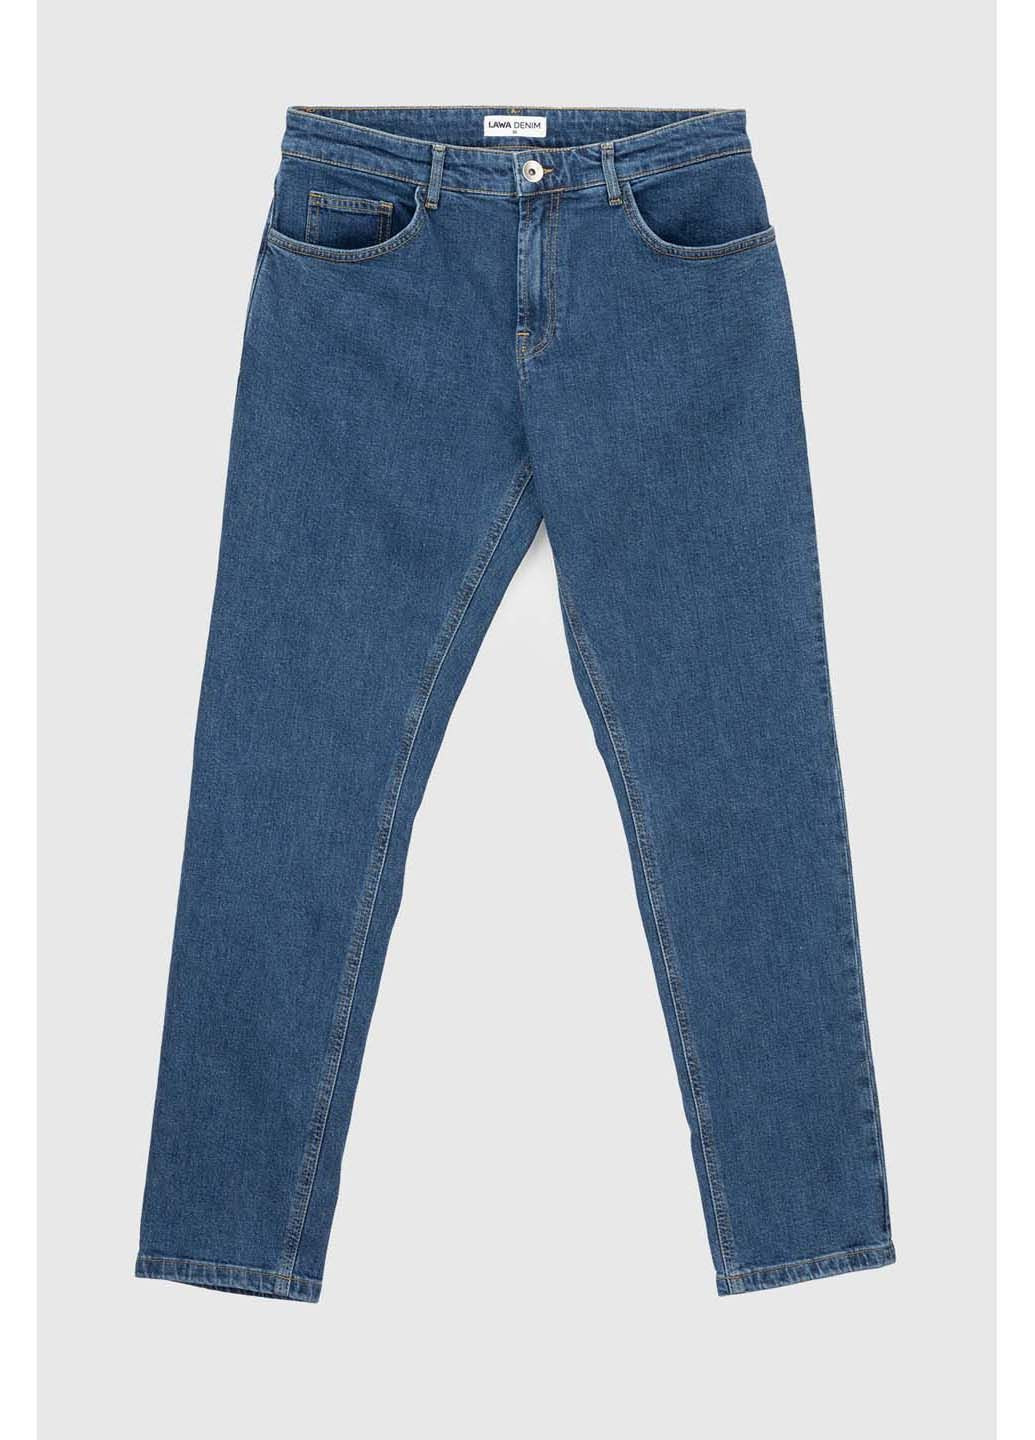 Синие демисезонные джинсы LAWA